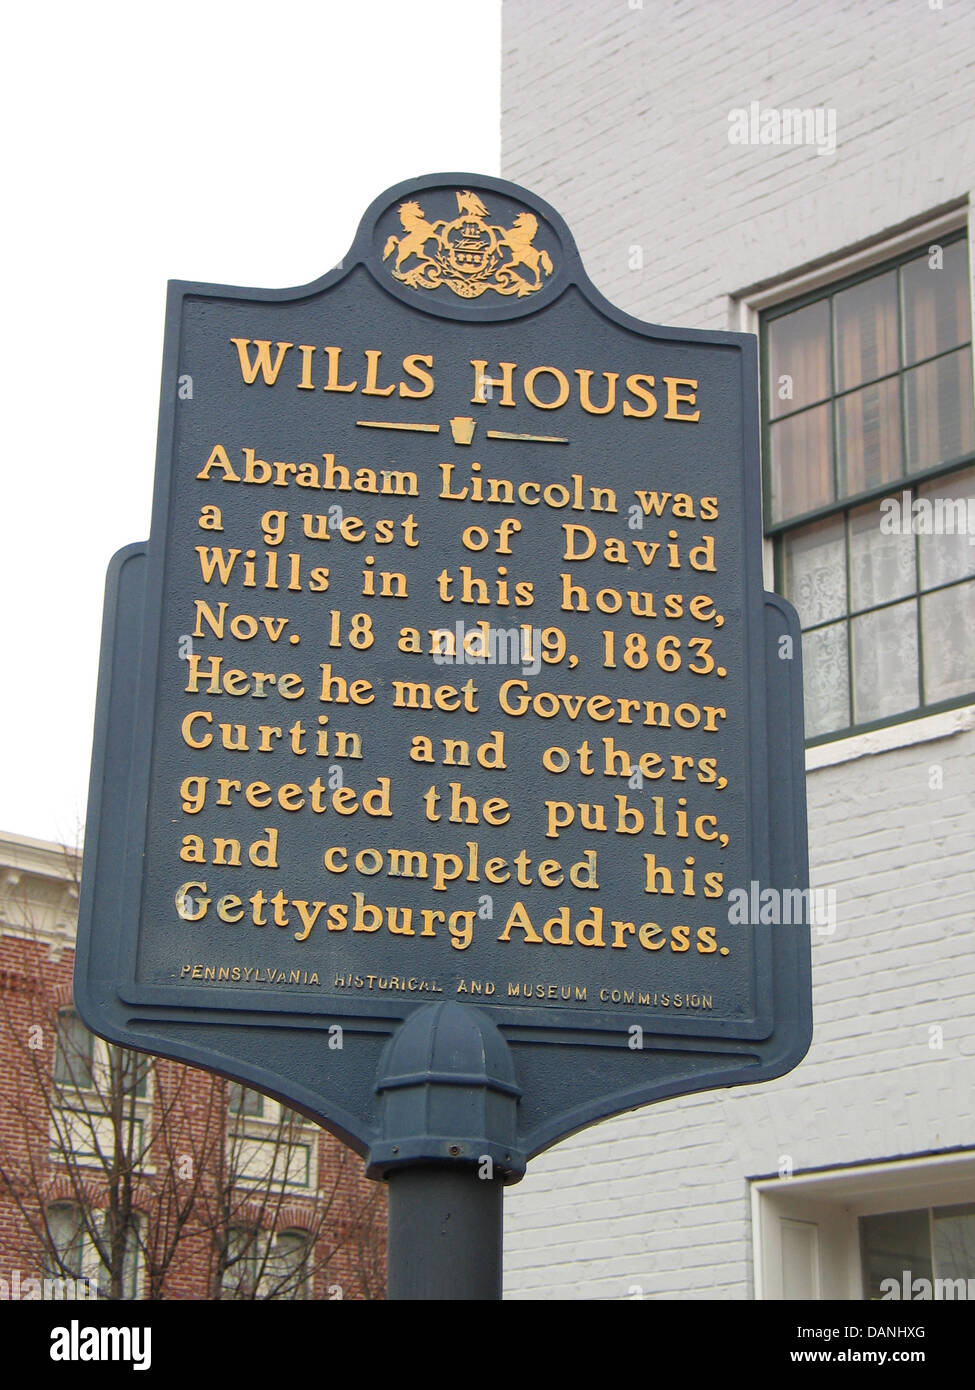 WILLS HOUSE Abramo Linconl è stato ospite del David Wills in questa casa, nov. 18 e 19, 1863. Qui ha incontrato il governatore Curtin e altri, ha salutato il pubblico e ha completato il suo indirizzo di Gettysburg. In Pennsylvania Historical and Museum Commission Foto Stock